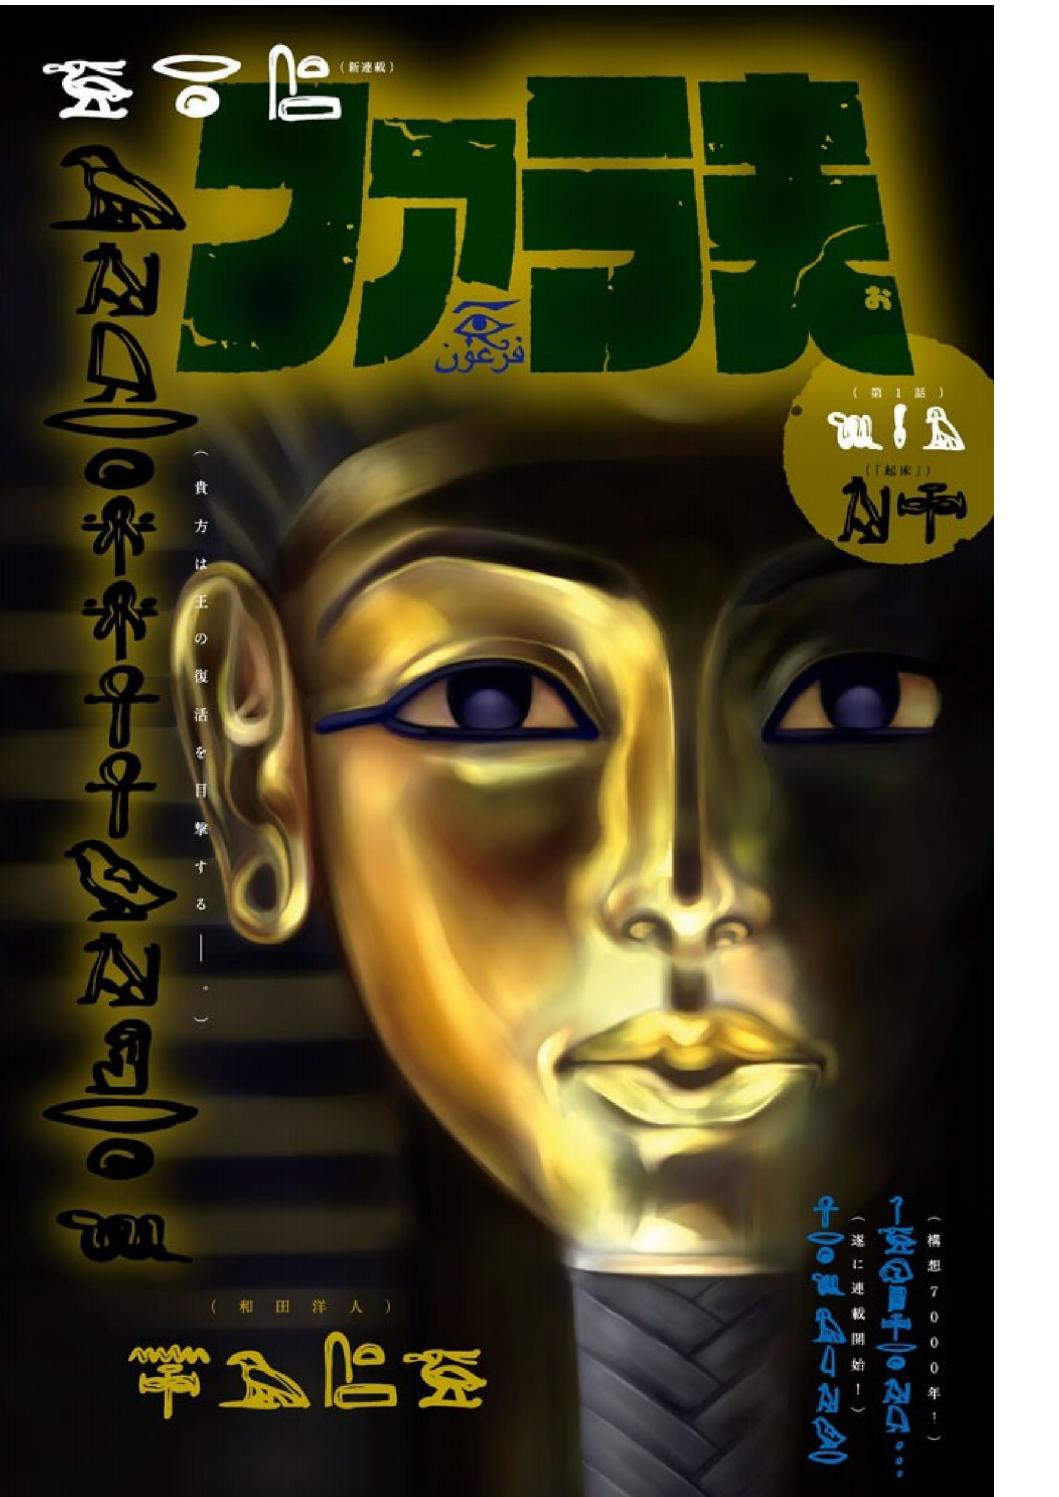 Pharaoh Vol. 1 Ch. 5 True Face